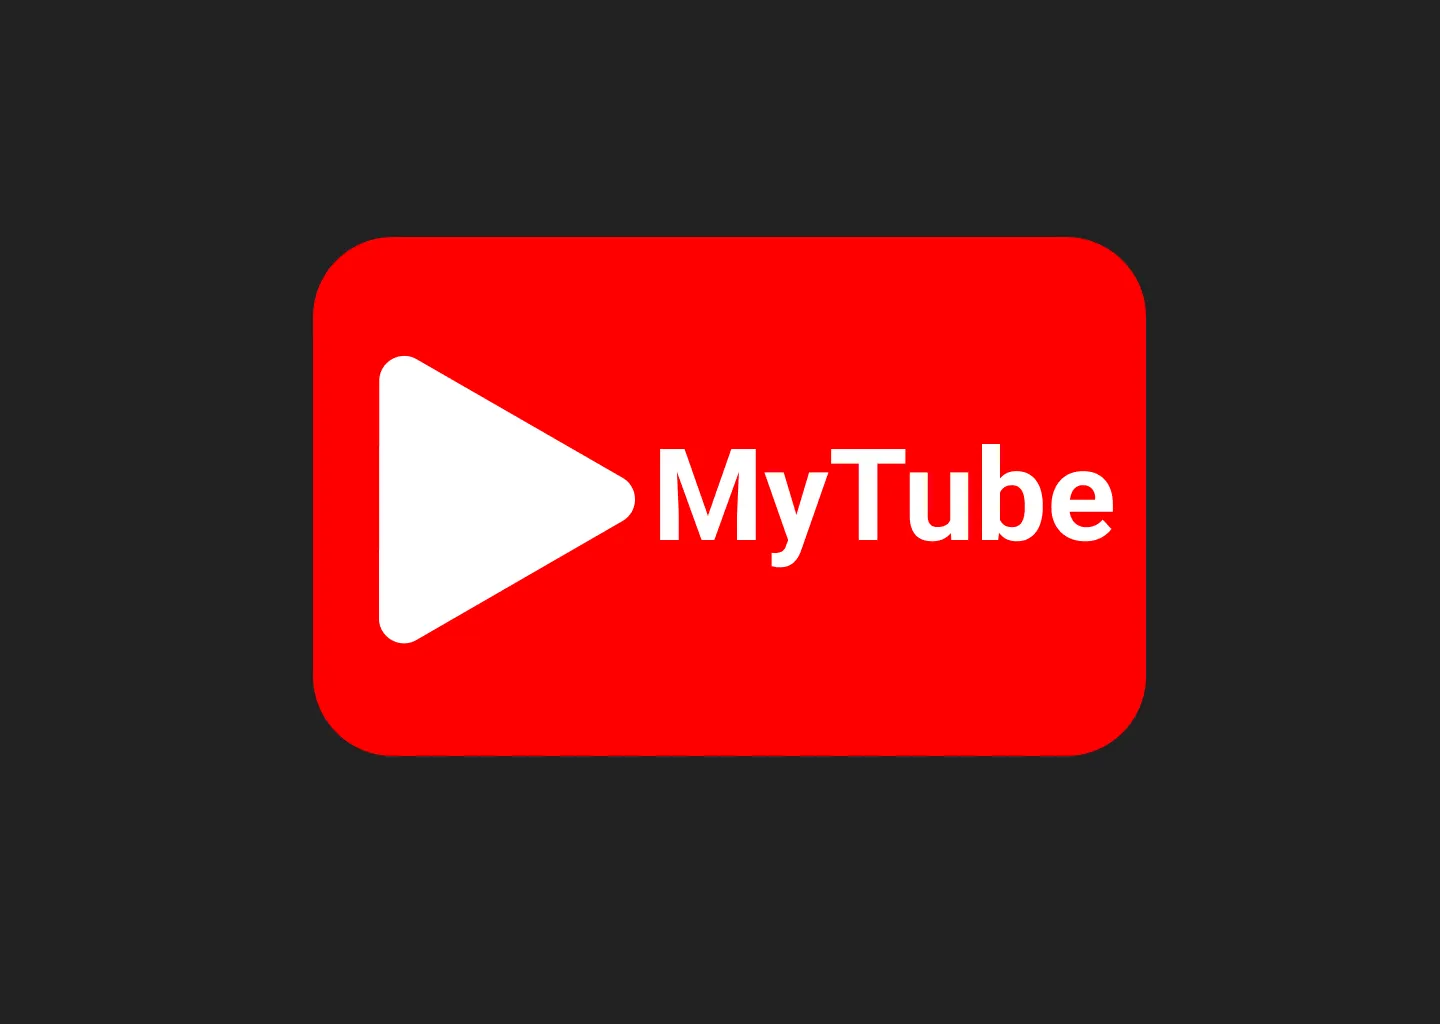 MyTube logo